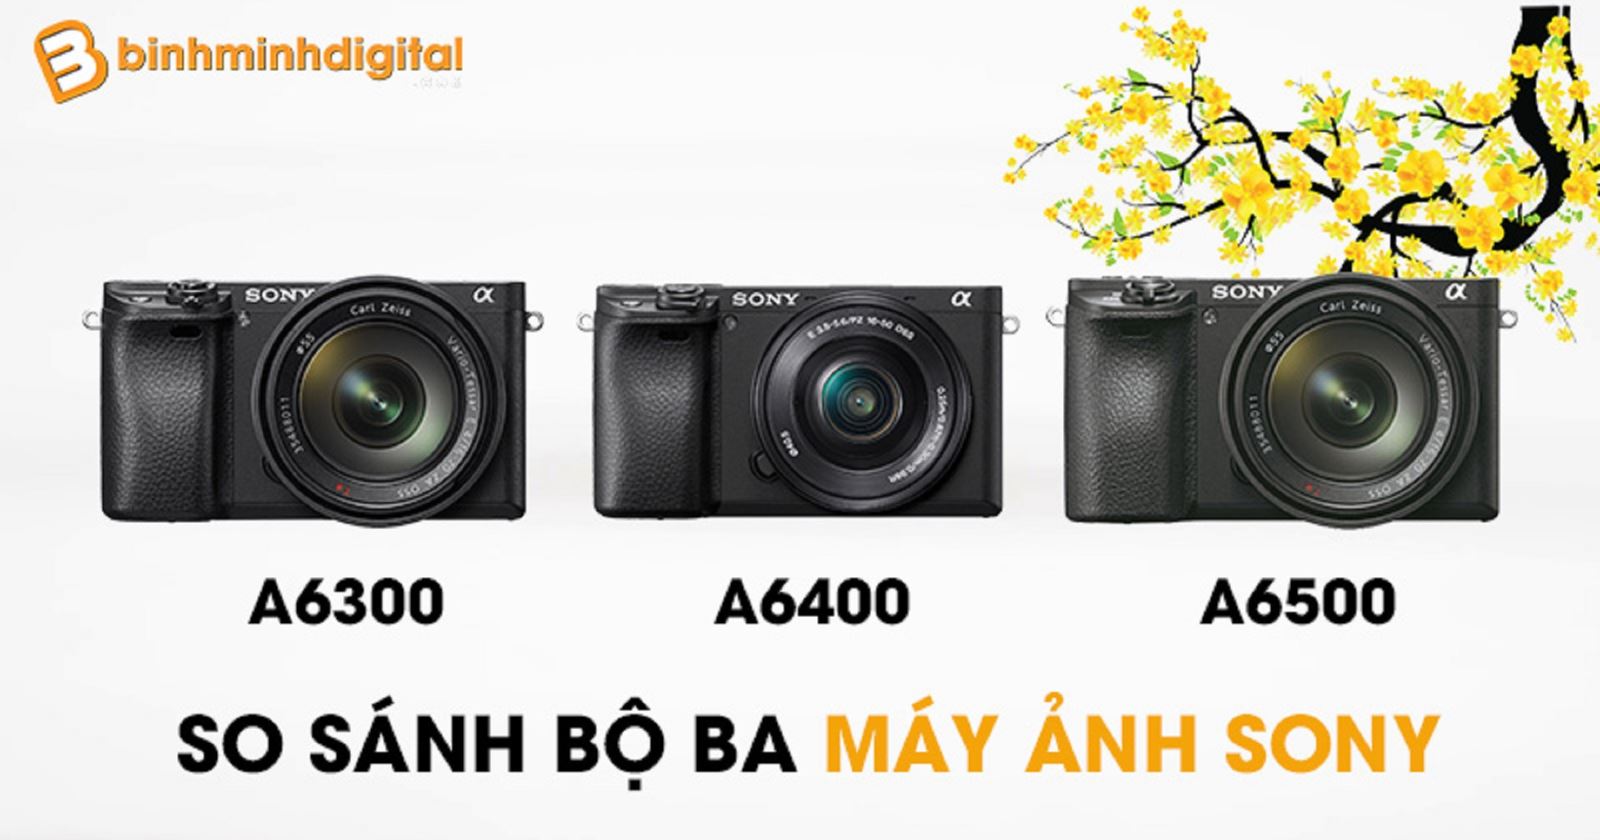 So sánh bộ ba máy ảnh Sony A6400 vs Sony A6300 vs Sony A6500